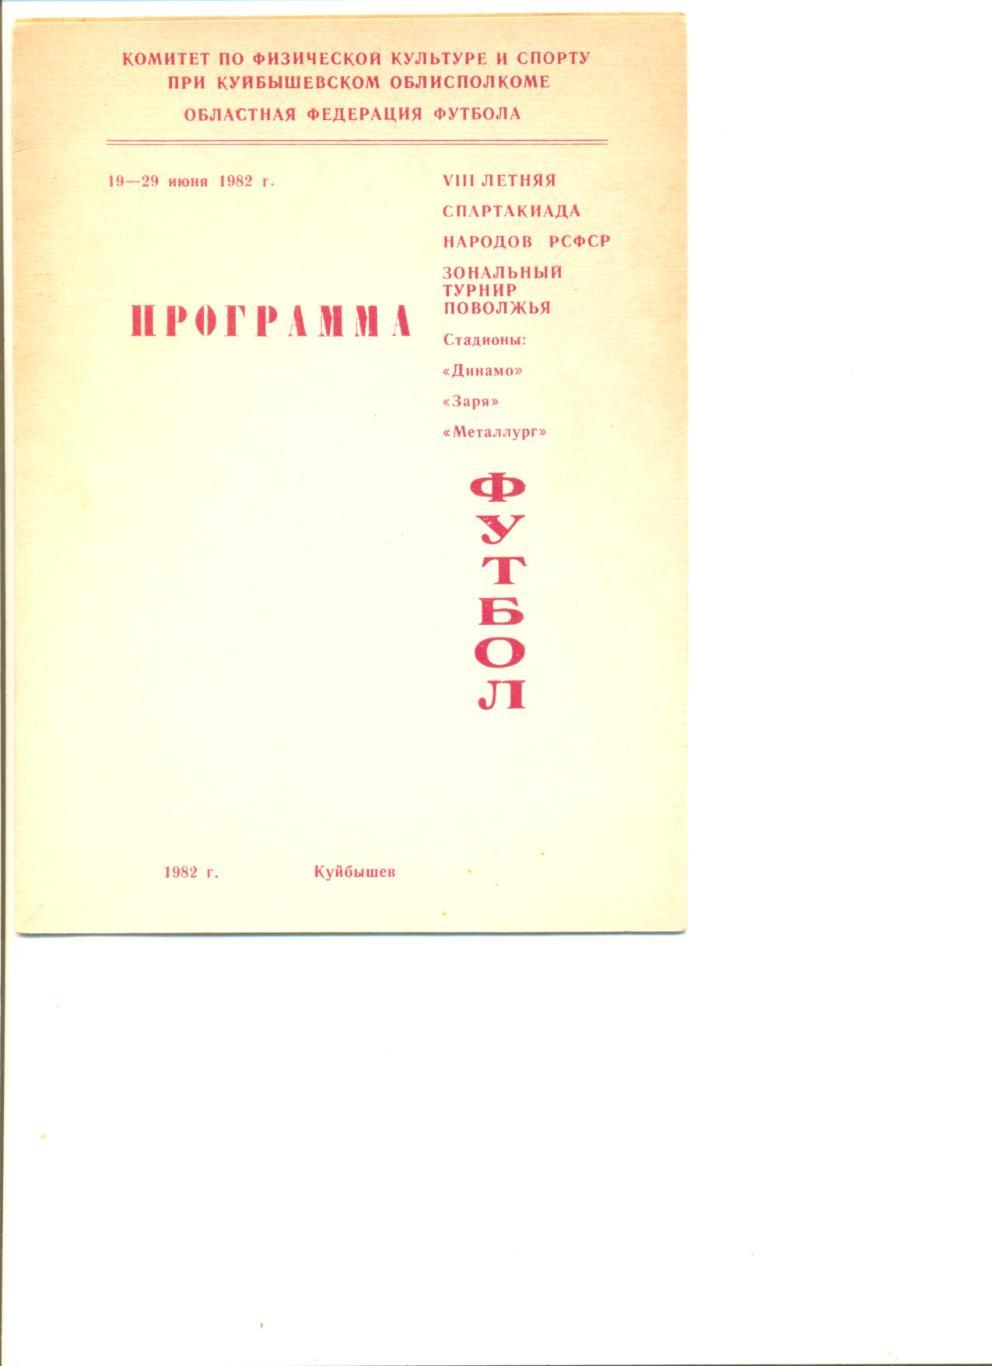 VIII Спартакиада народов РСФСР. Зона Поволжья. 19-29.06.1982 г. Куйбышев.